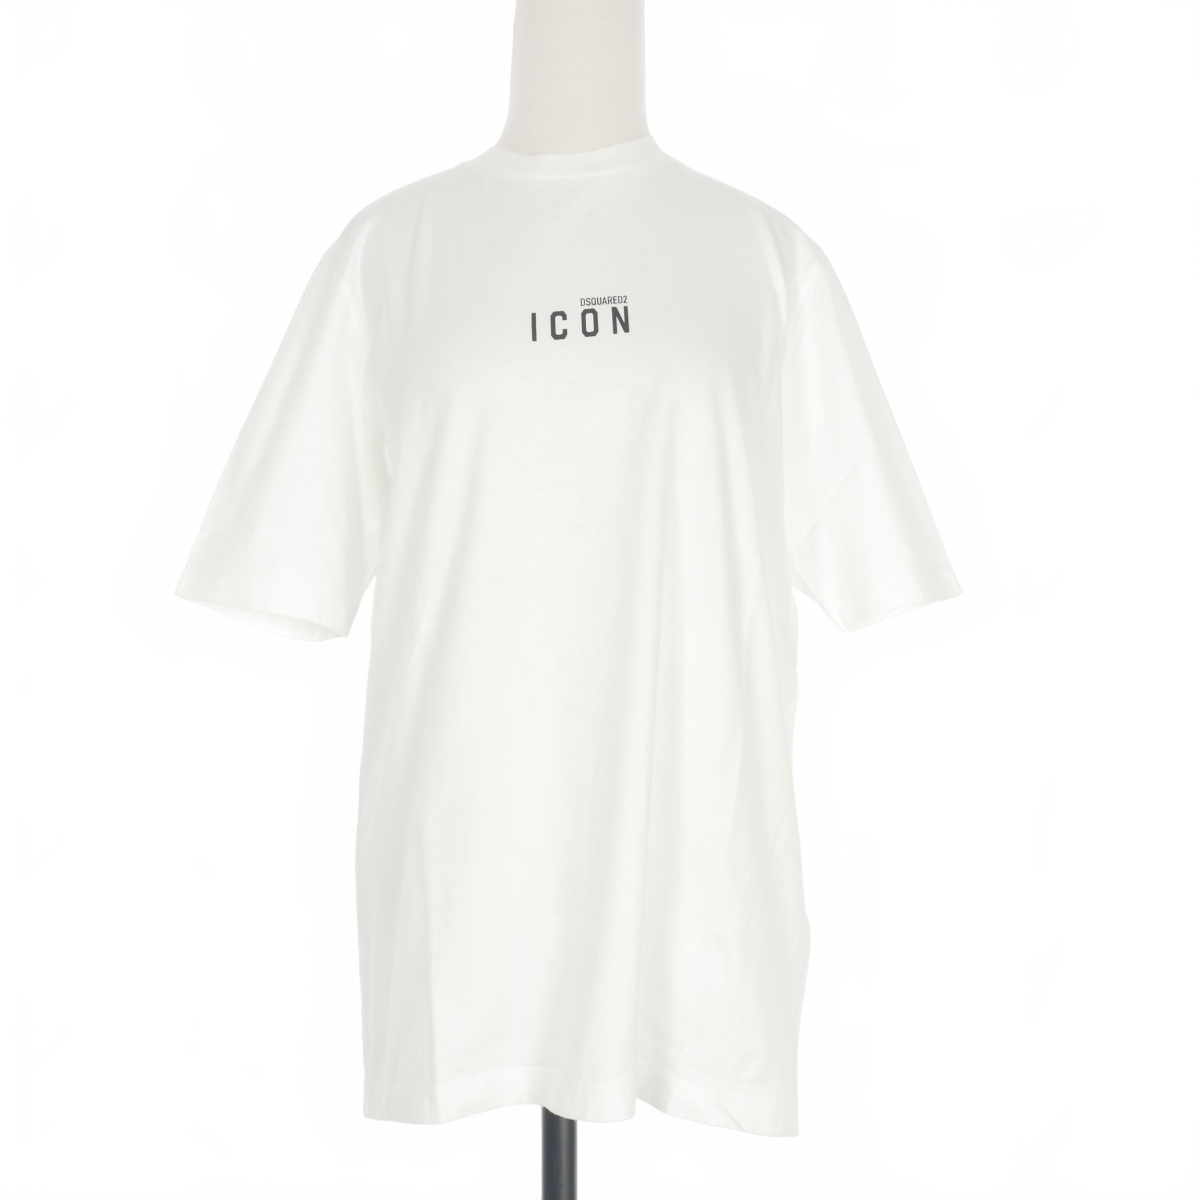 ディースクエアード DSQUARED2 20AW Icon Mini Logo T-Shirt アイコン ロゴプリント Tシャツ カットソー 半袖 M ホワイト 白 S80GC0009